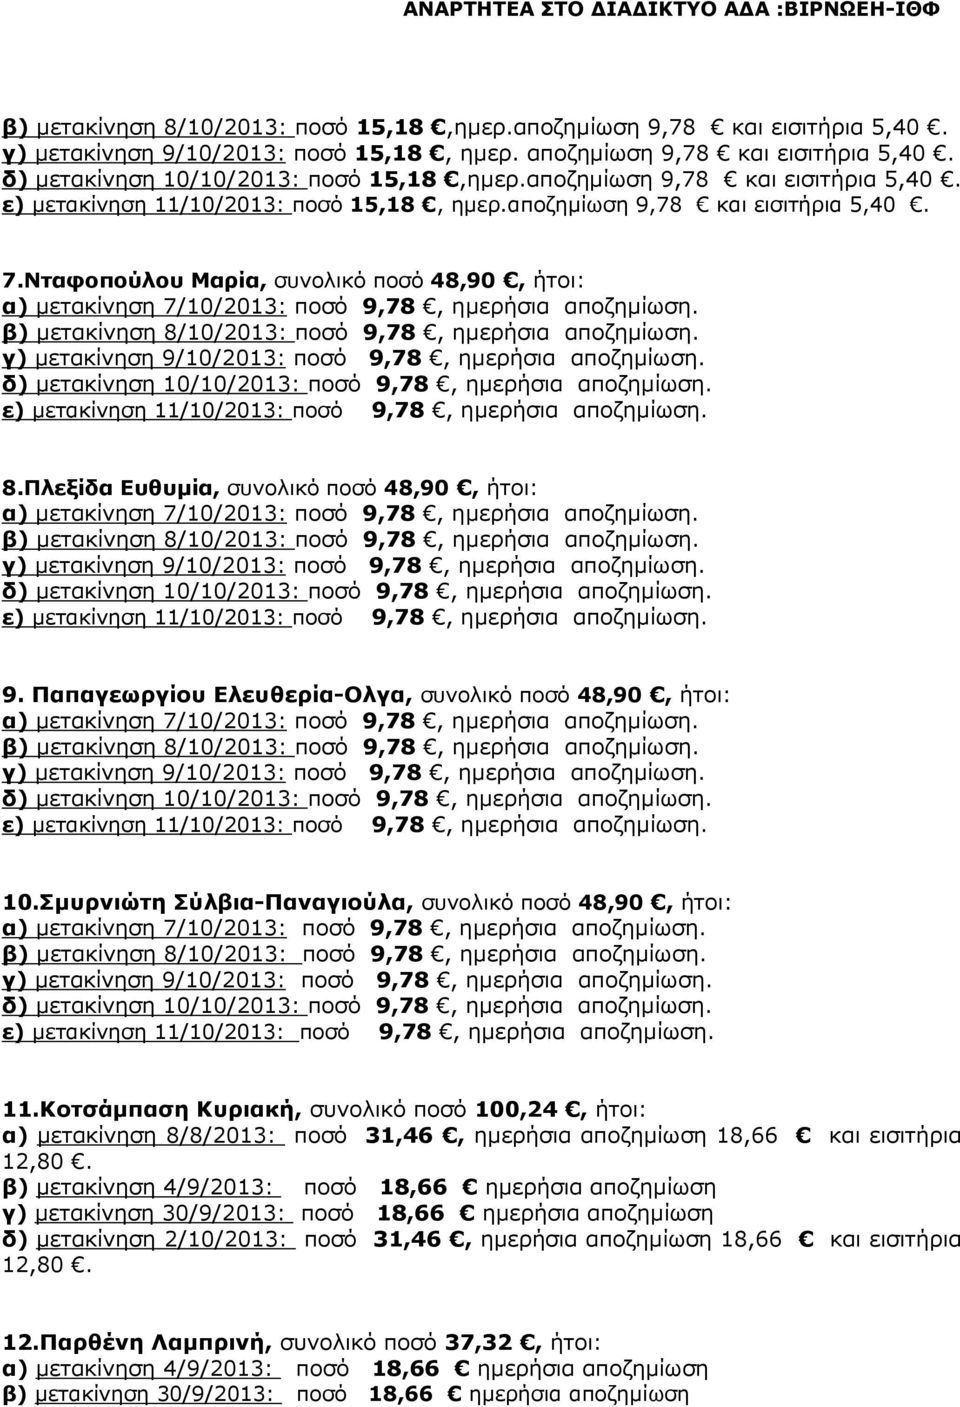 Νταφοπούλου Μαρία, συνολικό ποσό 48,90, ήτοι: α) µετακίνηση 7/10/2013: ποσό 9,78, ηµερήσια αποζηµίωση. β) µετακίνηση 8/10/2013: ποσό 9,78, ηµερήσια αποζηµίωση.